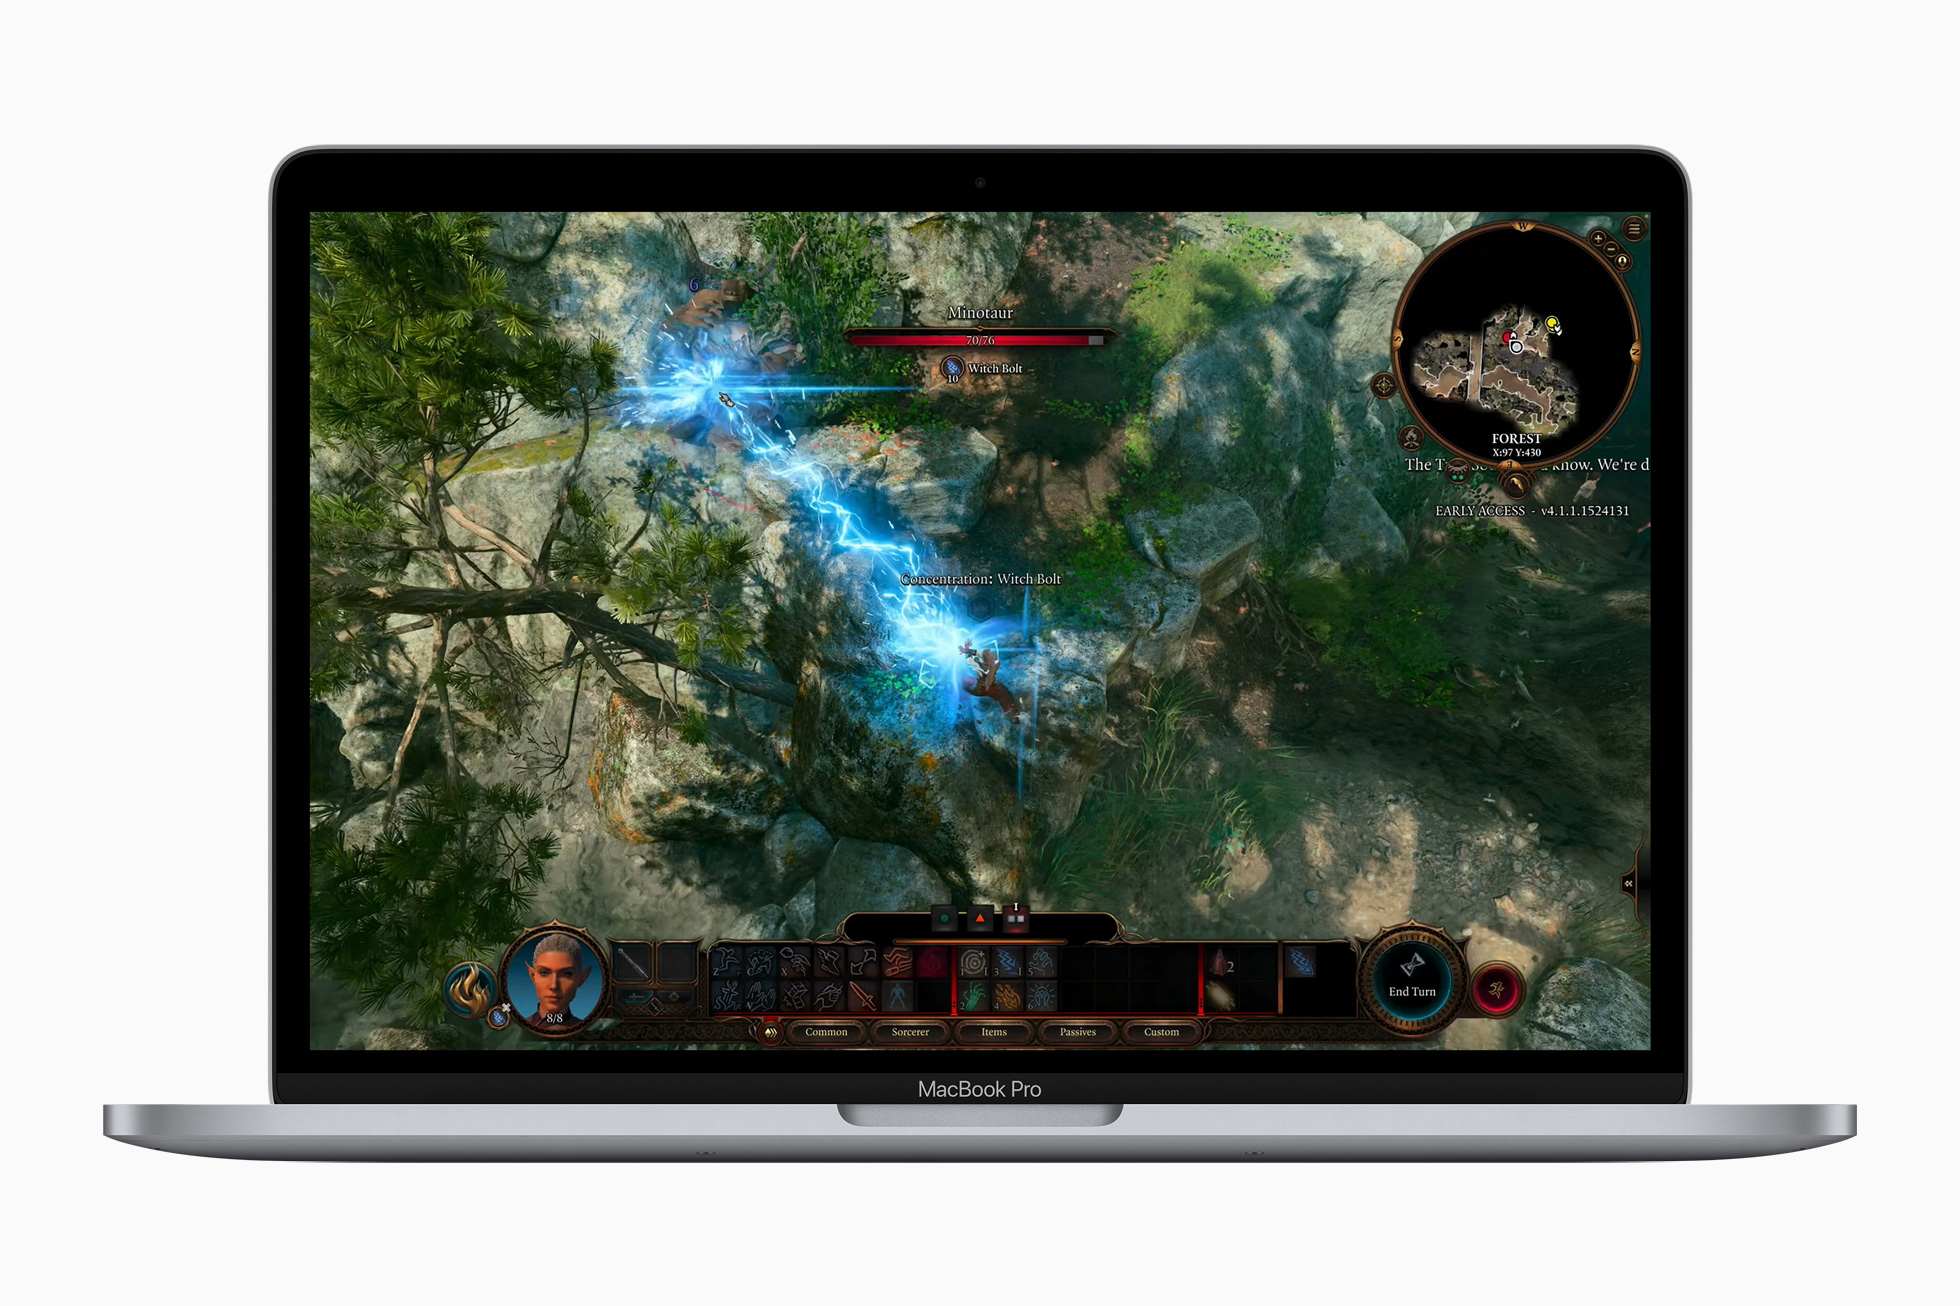 Màn hình của MacBook Pro M2 2022 hỗ trợ độ sáng 500 nits, dải màu rộng P3 với 1 tỷ màu và công nghệ True Tone như Mac Air.